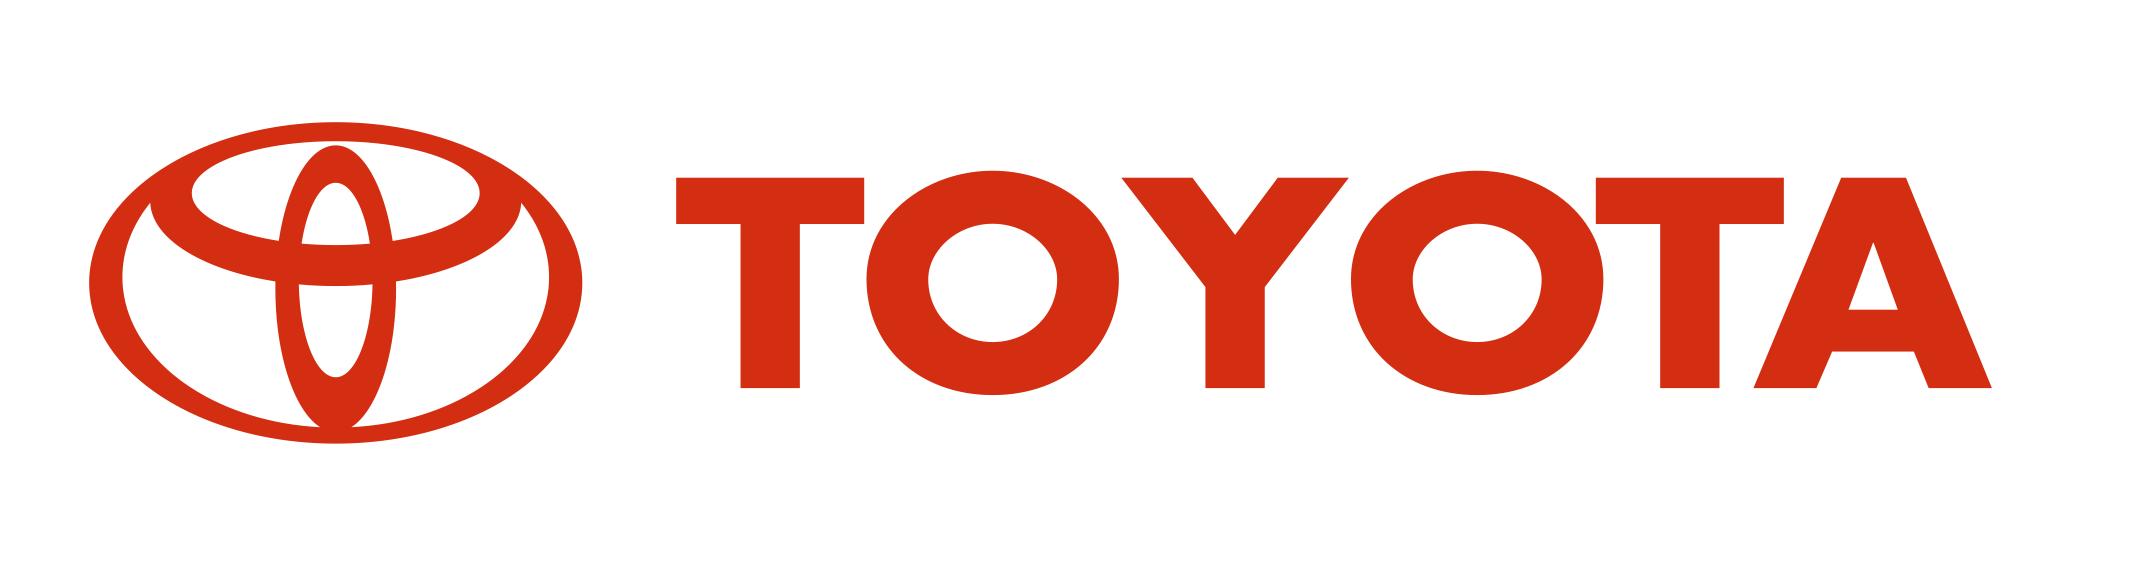 Toyota desarrolla sistema para evitar el atropello de peatones